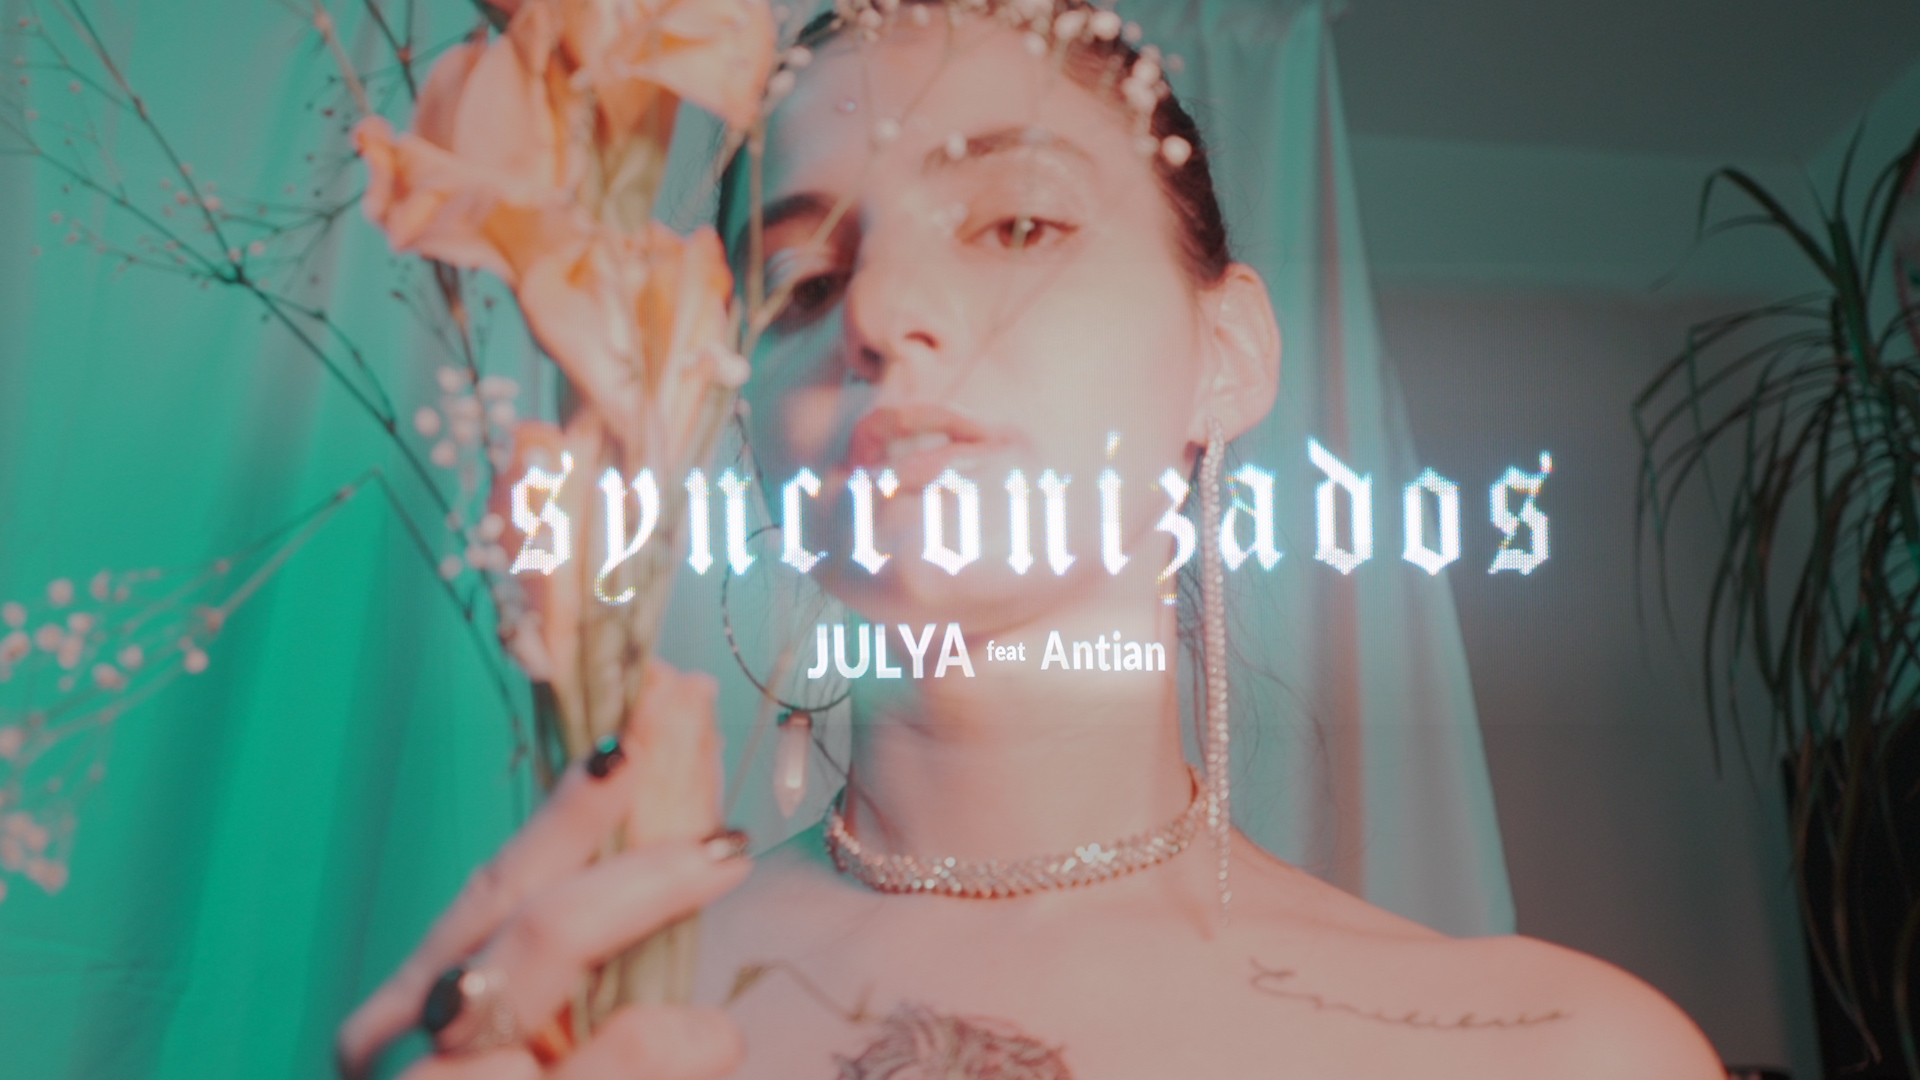 JULYA nos habla del amor en tiempos de cuarentena                                                                                                                                                                                                                                                                                                                                                                                                                                                                                                                                                                                                                                                                                  en su nuevo sencillo ‘Syncronizados’.